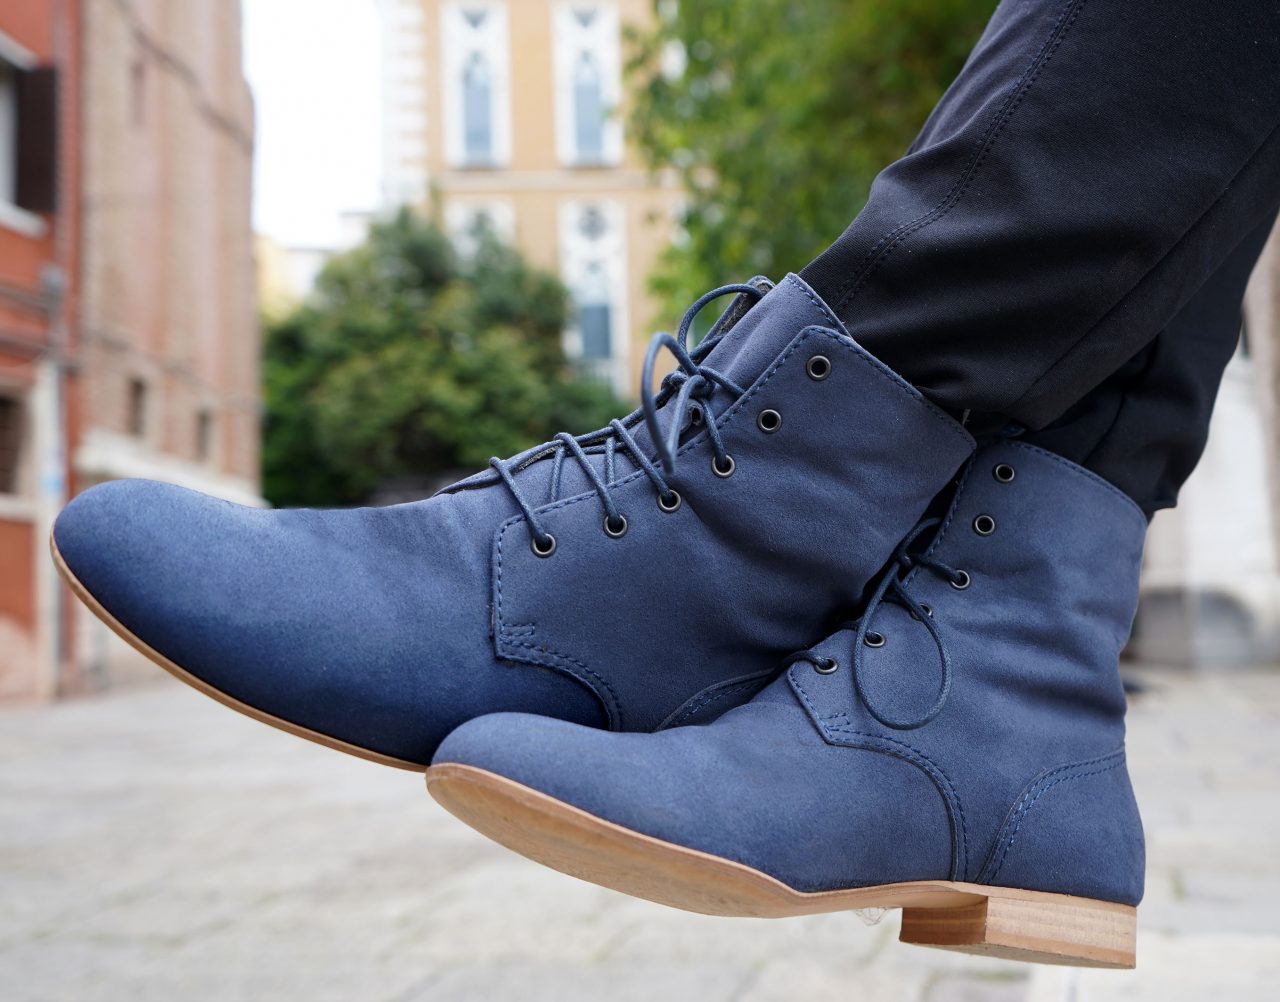 Noah est une marque italienne qui propose des chaussures élégantes, fabriquées à partir de cuir vegane et de microfibres.